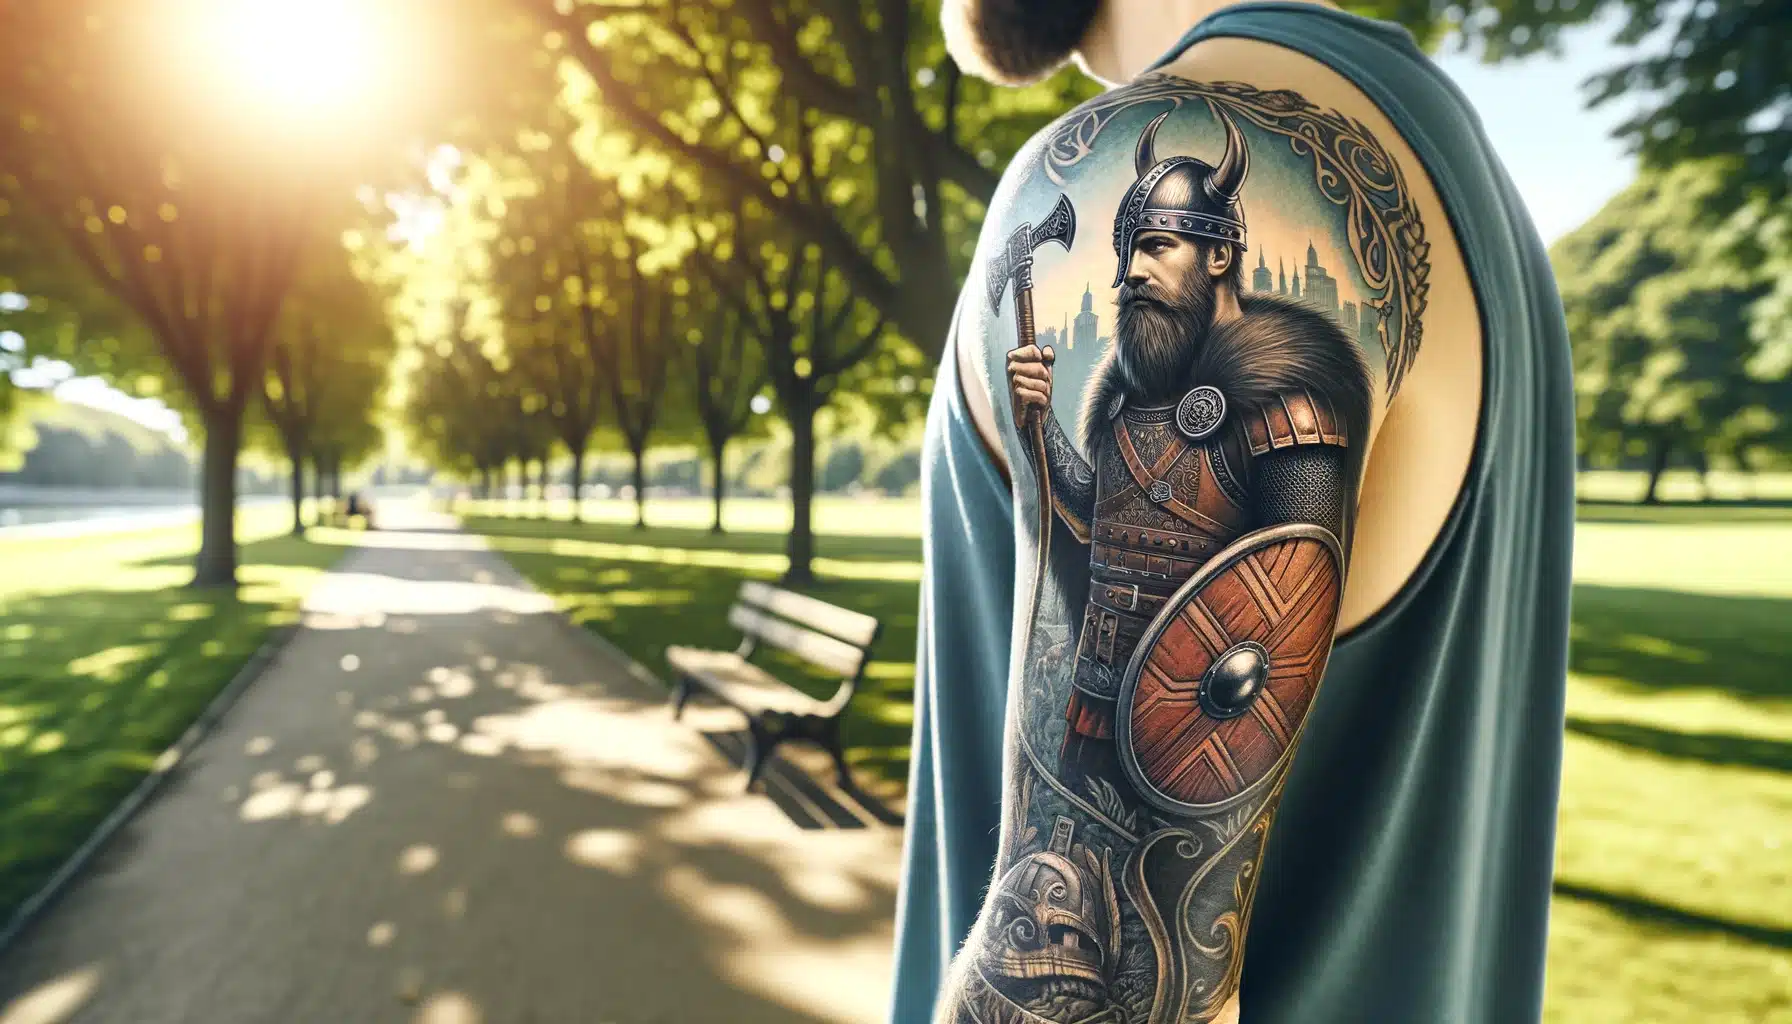 Wiking tatuaż na ręce mężczyzny